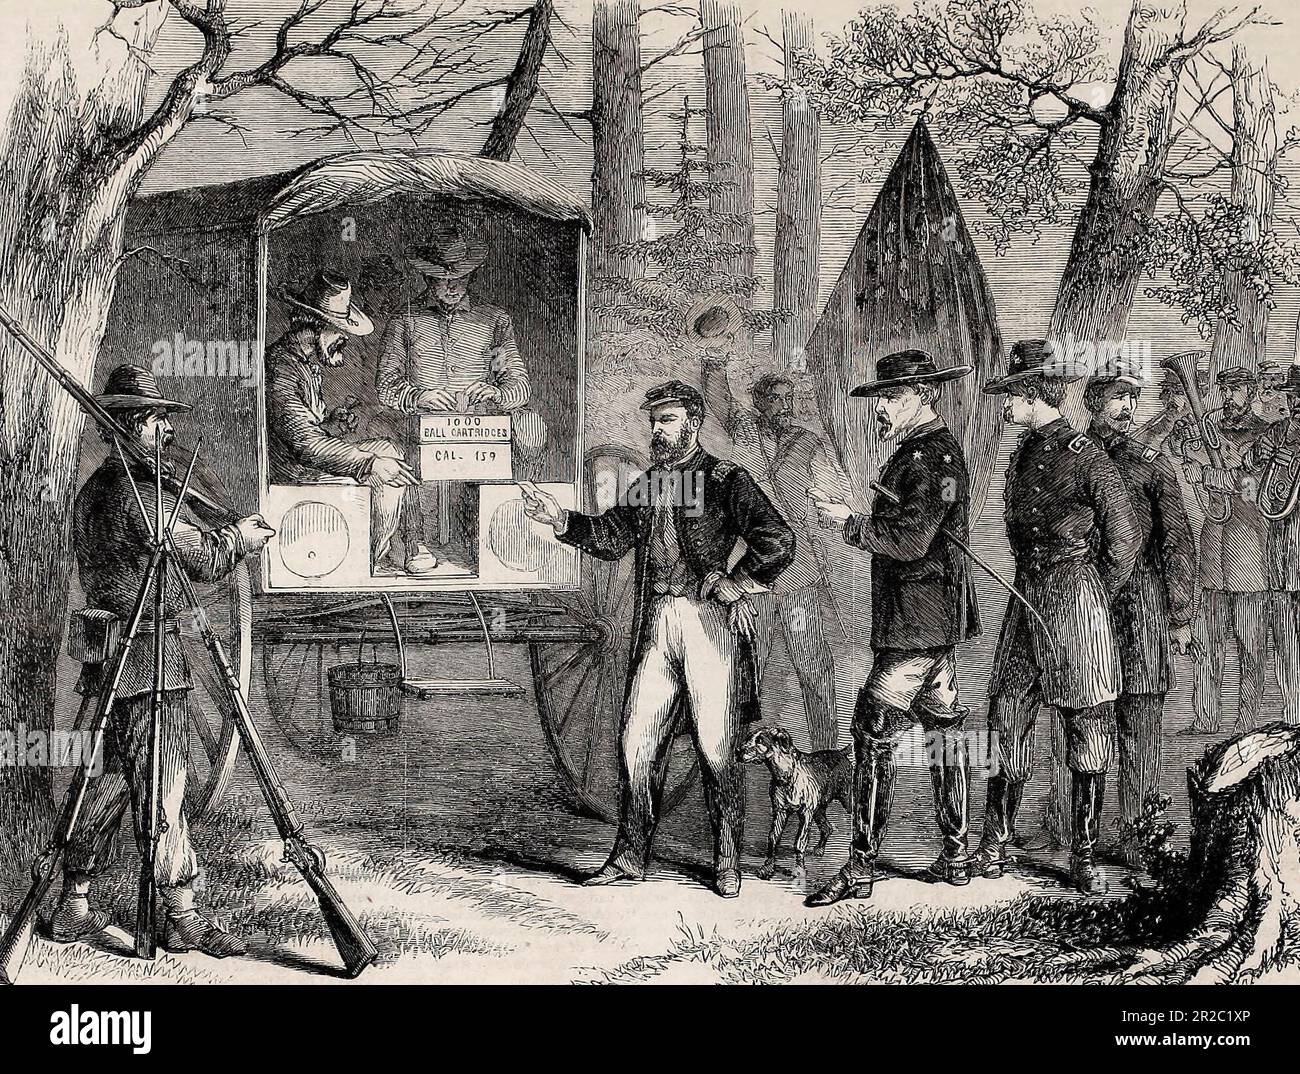 Giornata delle elezioni nell'Esercito dello Shenandoah - scena ai sondaggi - Generale Sheridan, Generale Crook, e altri ufficiali che gettano i loro voti - Guerra civile americana, 1864 Foto Stock